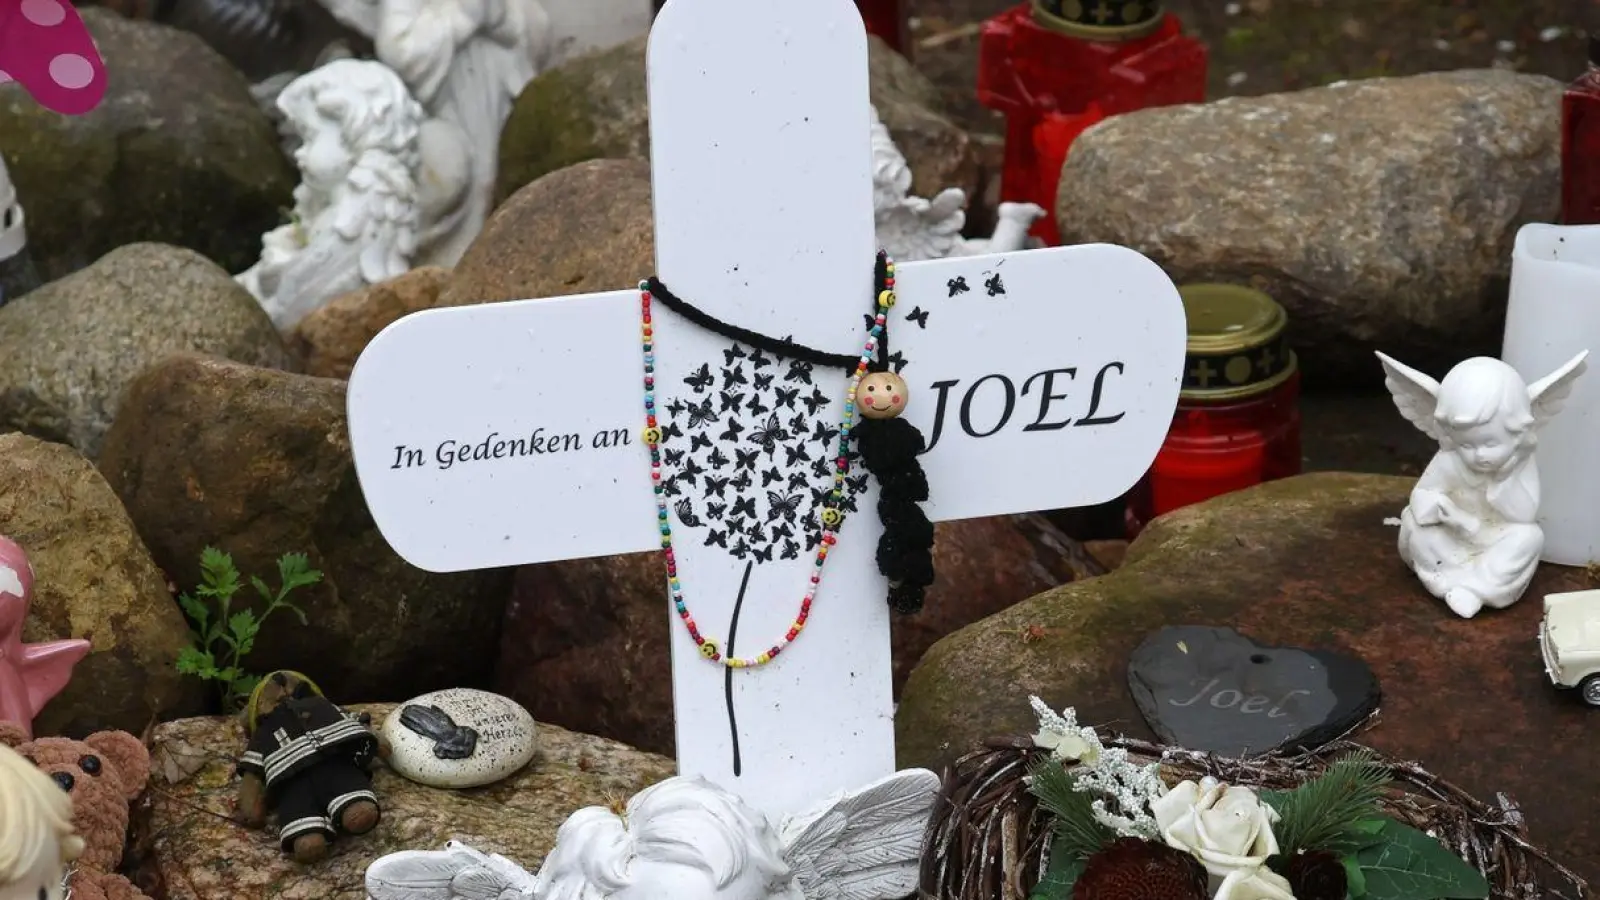 Kreuze, Figuren, Kerzen und Blumen stehen an der Stelle, wo der sechsjährige getötete Joel gefunden wurde. Der Prozess wegen Totschlags geht weiter. (Foto: Bernd Wüstneck/dpa)